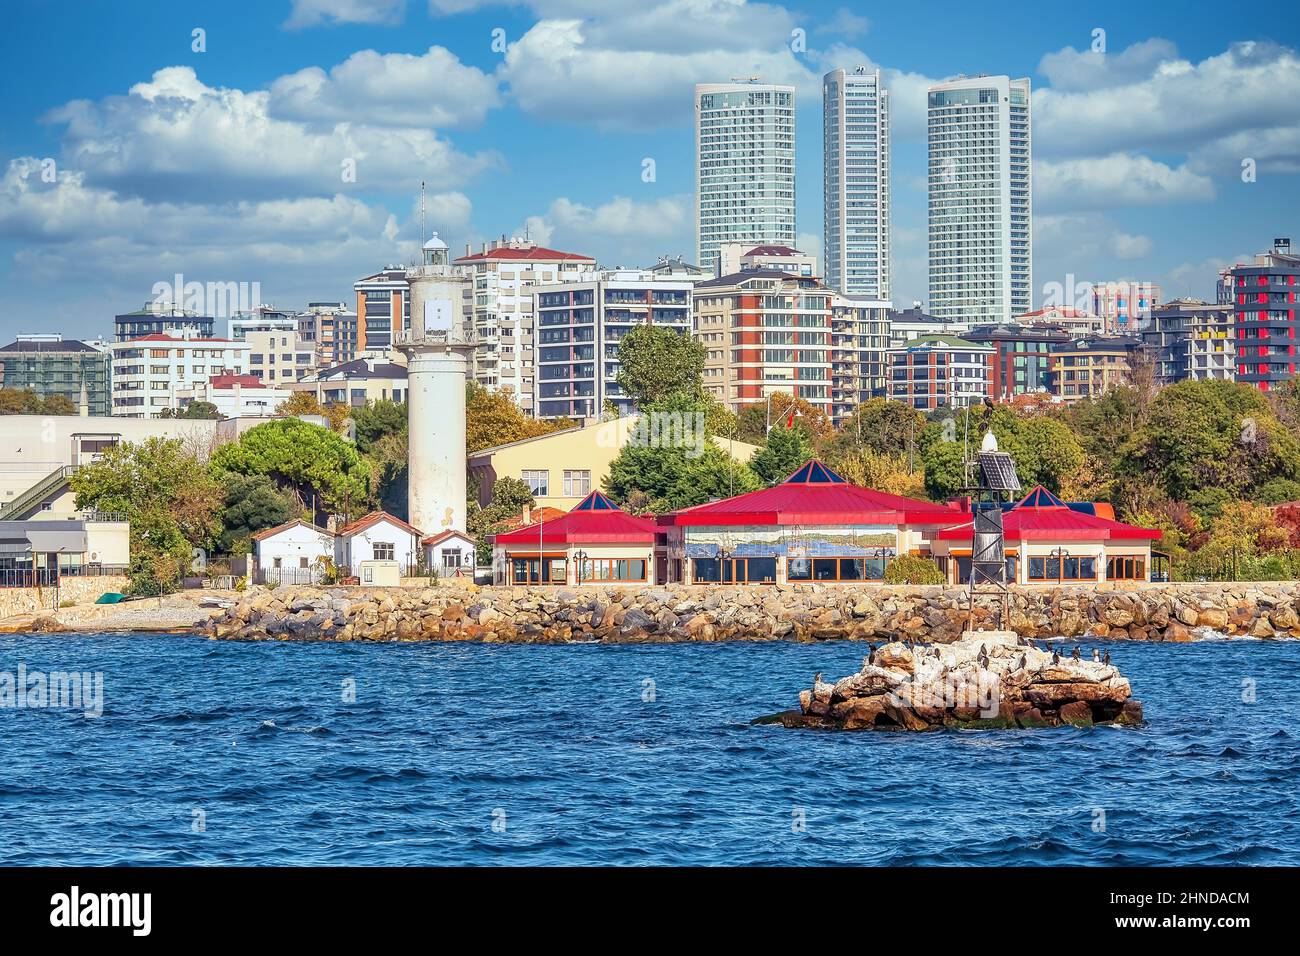 ISTANBUL, TÜRKEI - 9th. Oktober 2019: Echte Architektur am Ufer des Bosporus, beliebtes Reiseziel und wichtiger Durchgang zwischen der EU Stockfoto